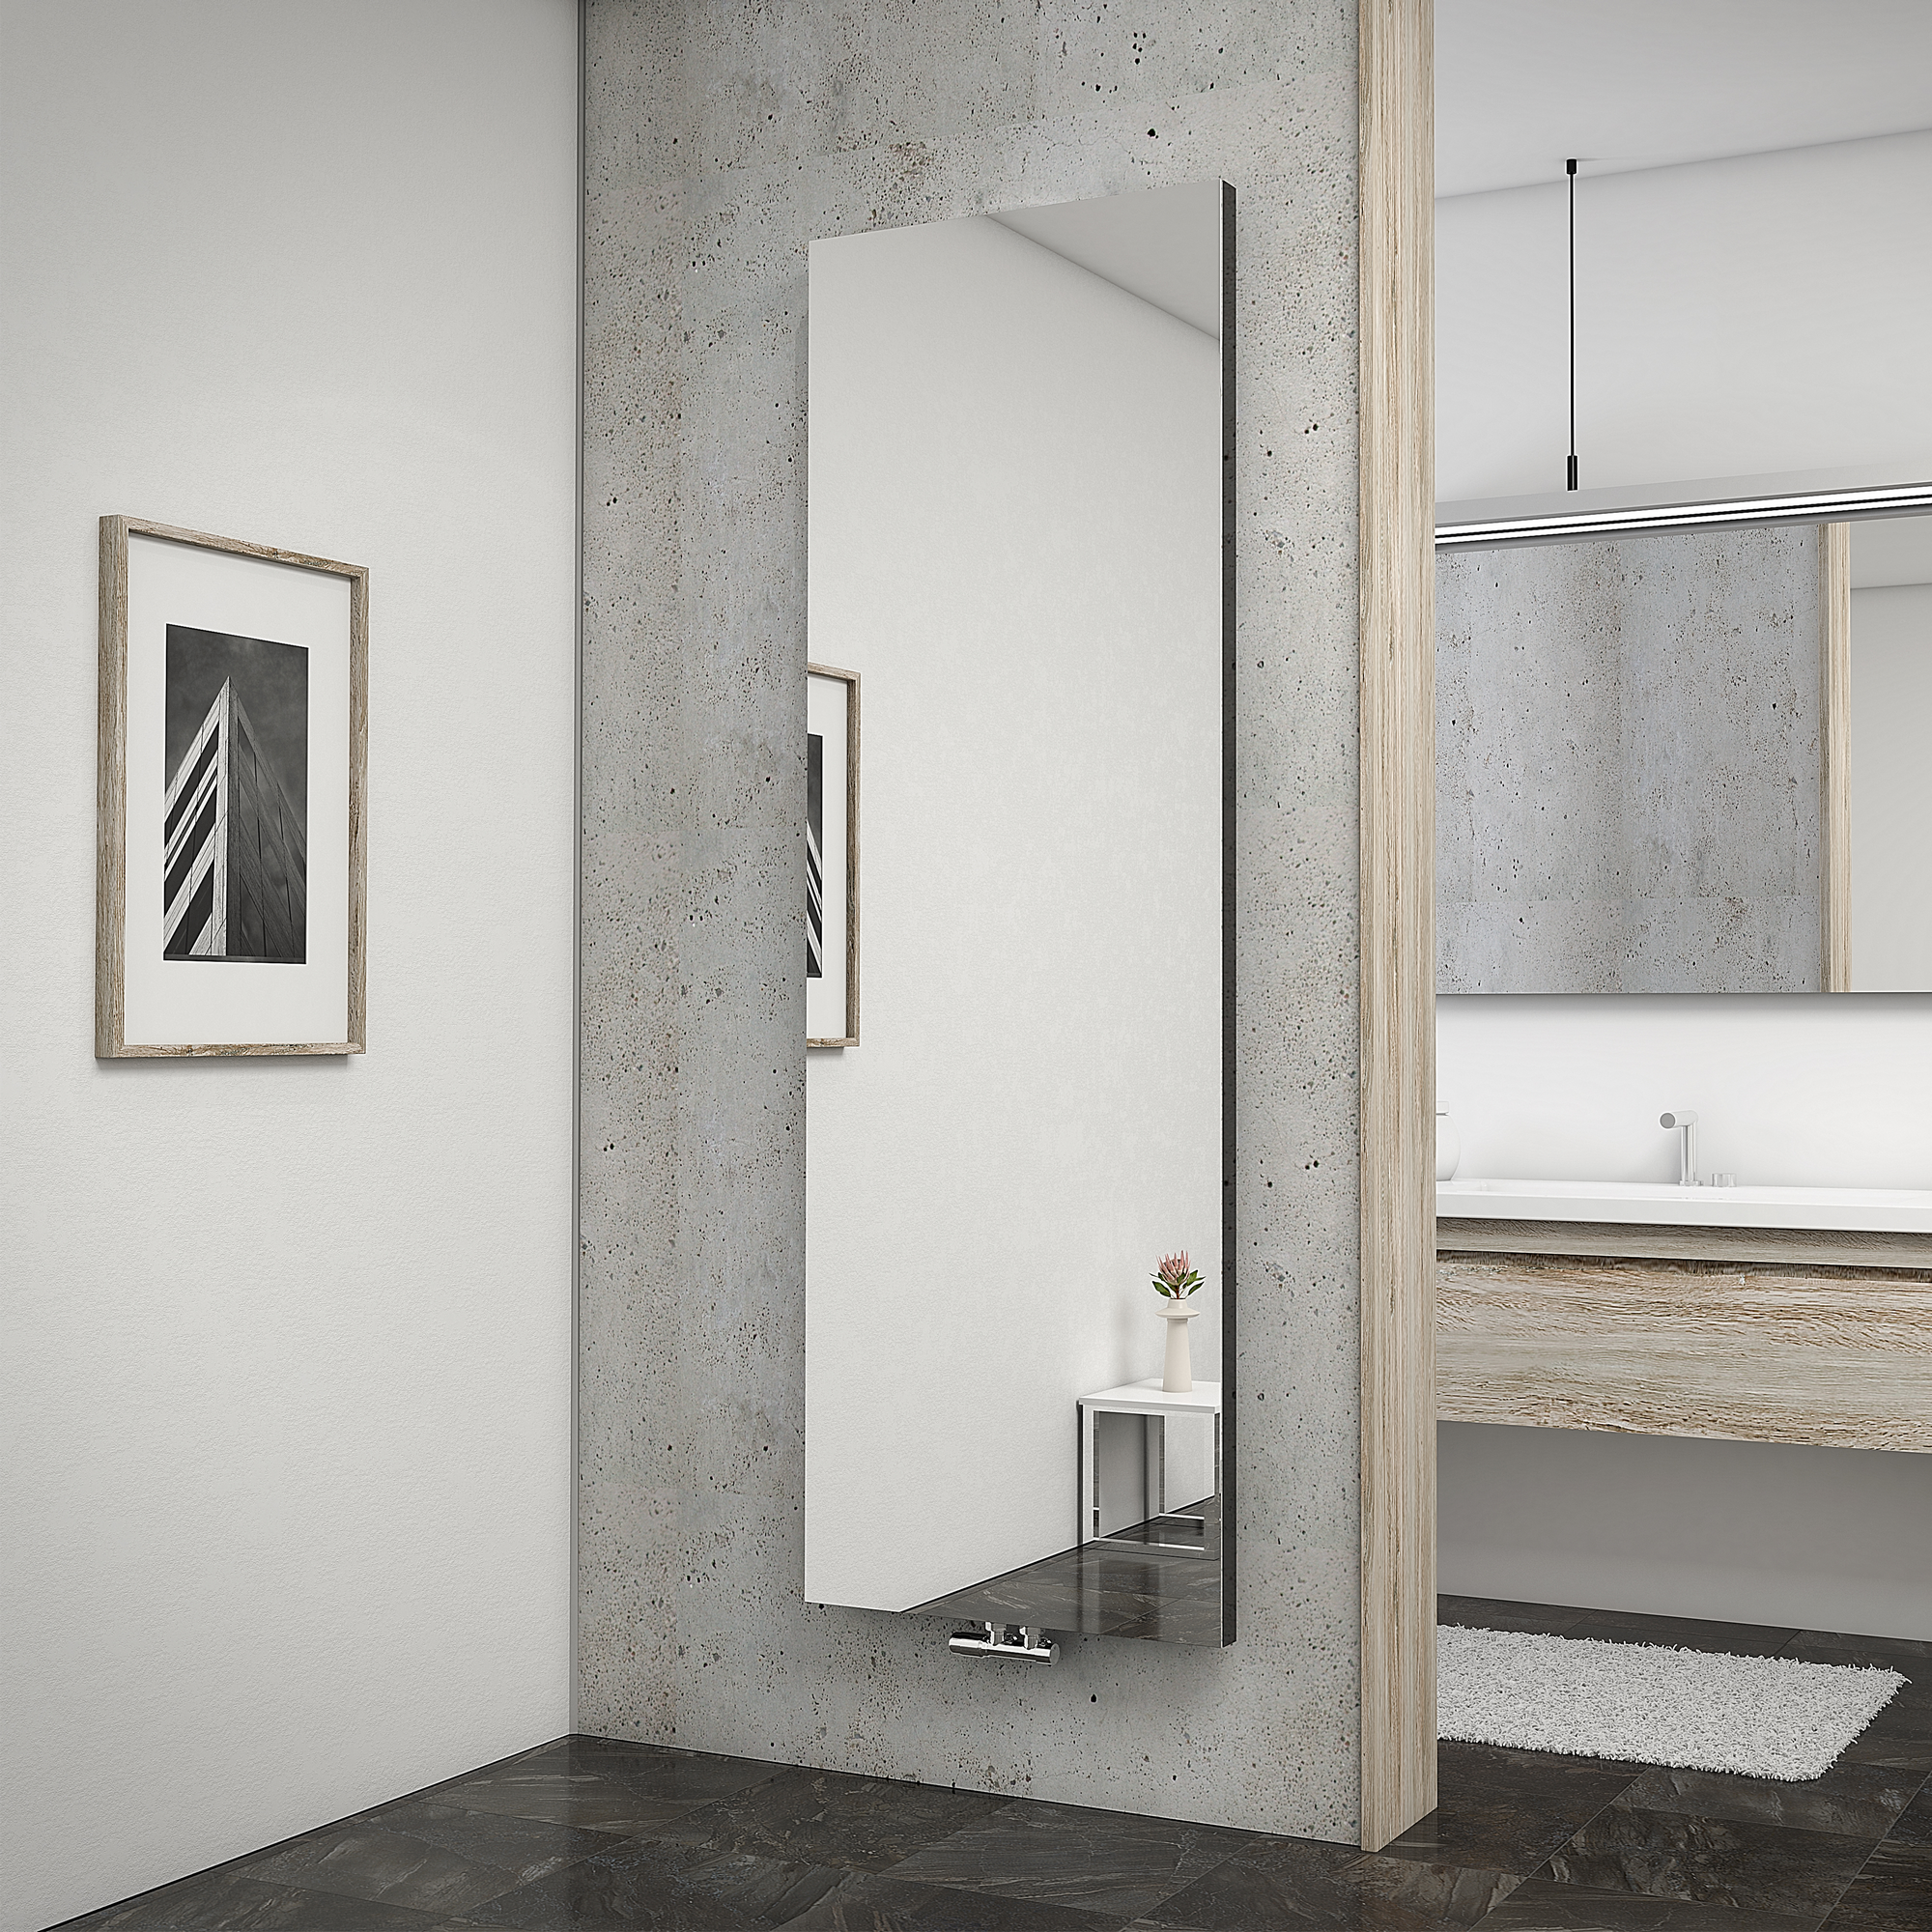 Badheizkörper 'New York' mit Spiegel, anthrazit, 180,6 x 60,8 cm + product picture